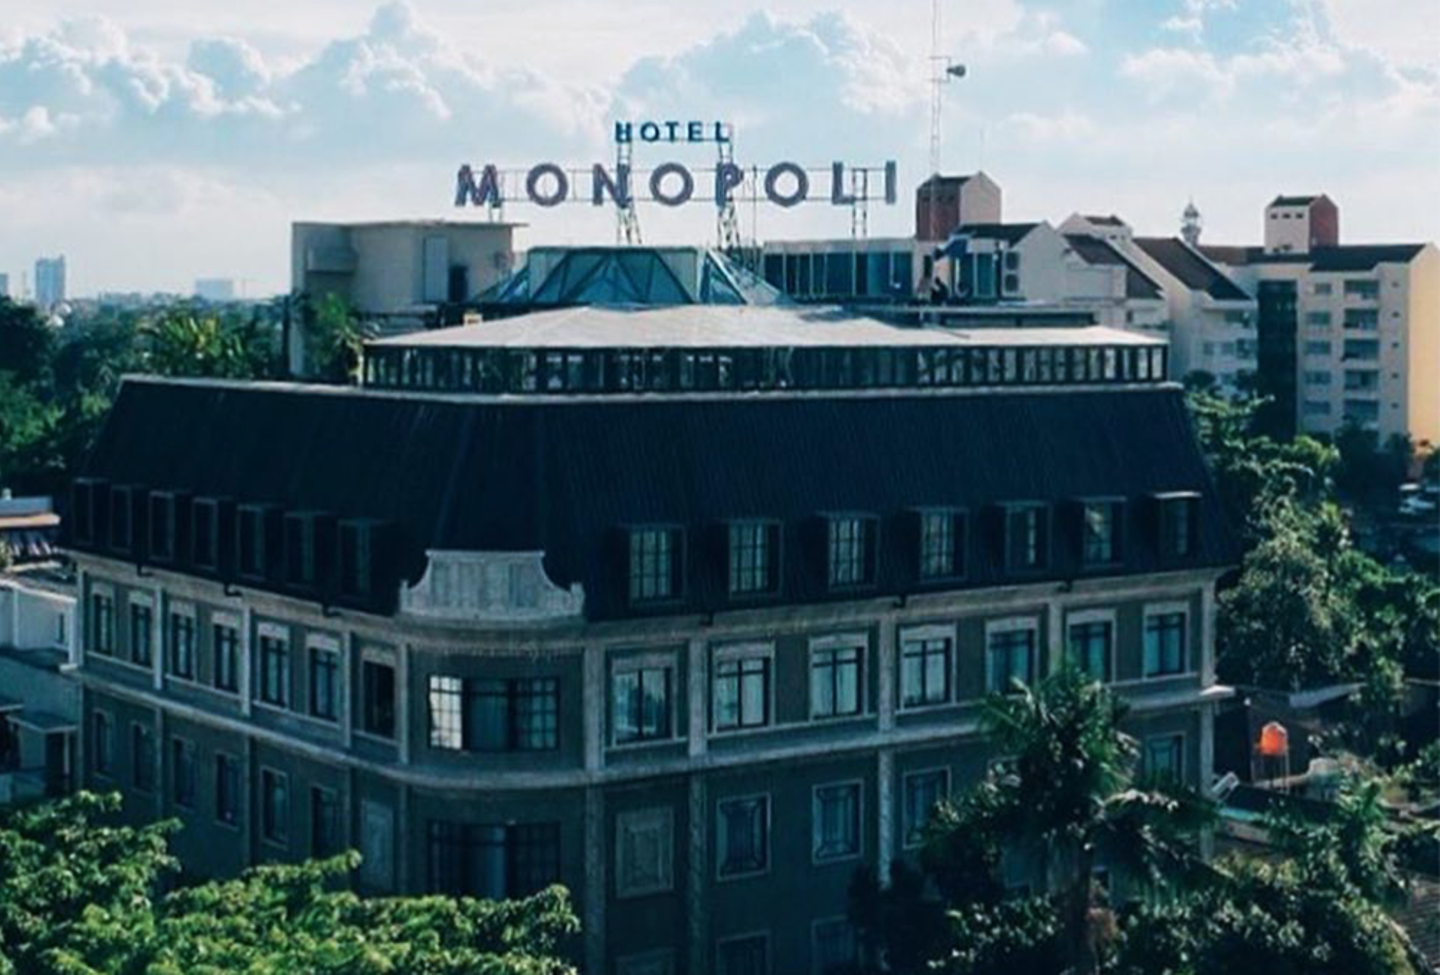 Hotel Monopoli: Antara Culinary, Akomodasi, dan Akulturasi Seni